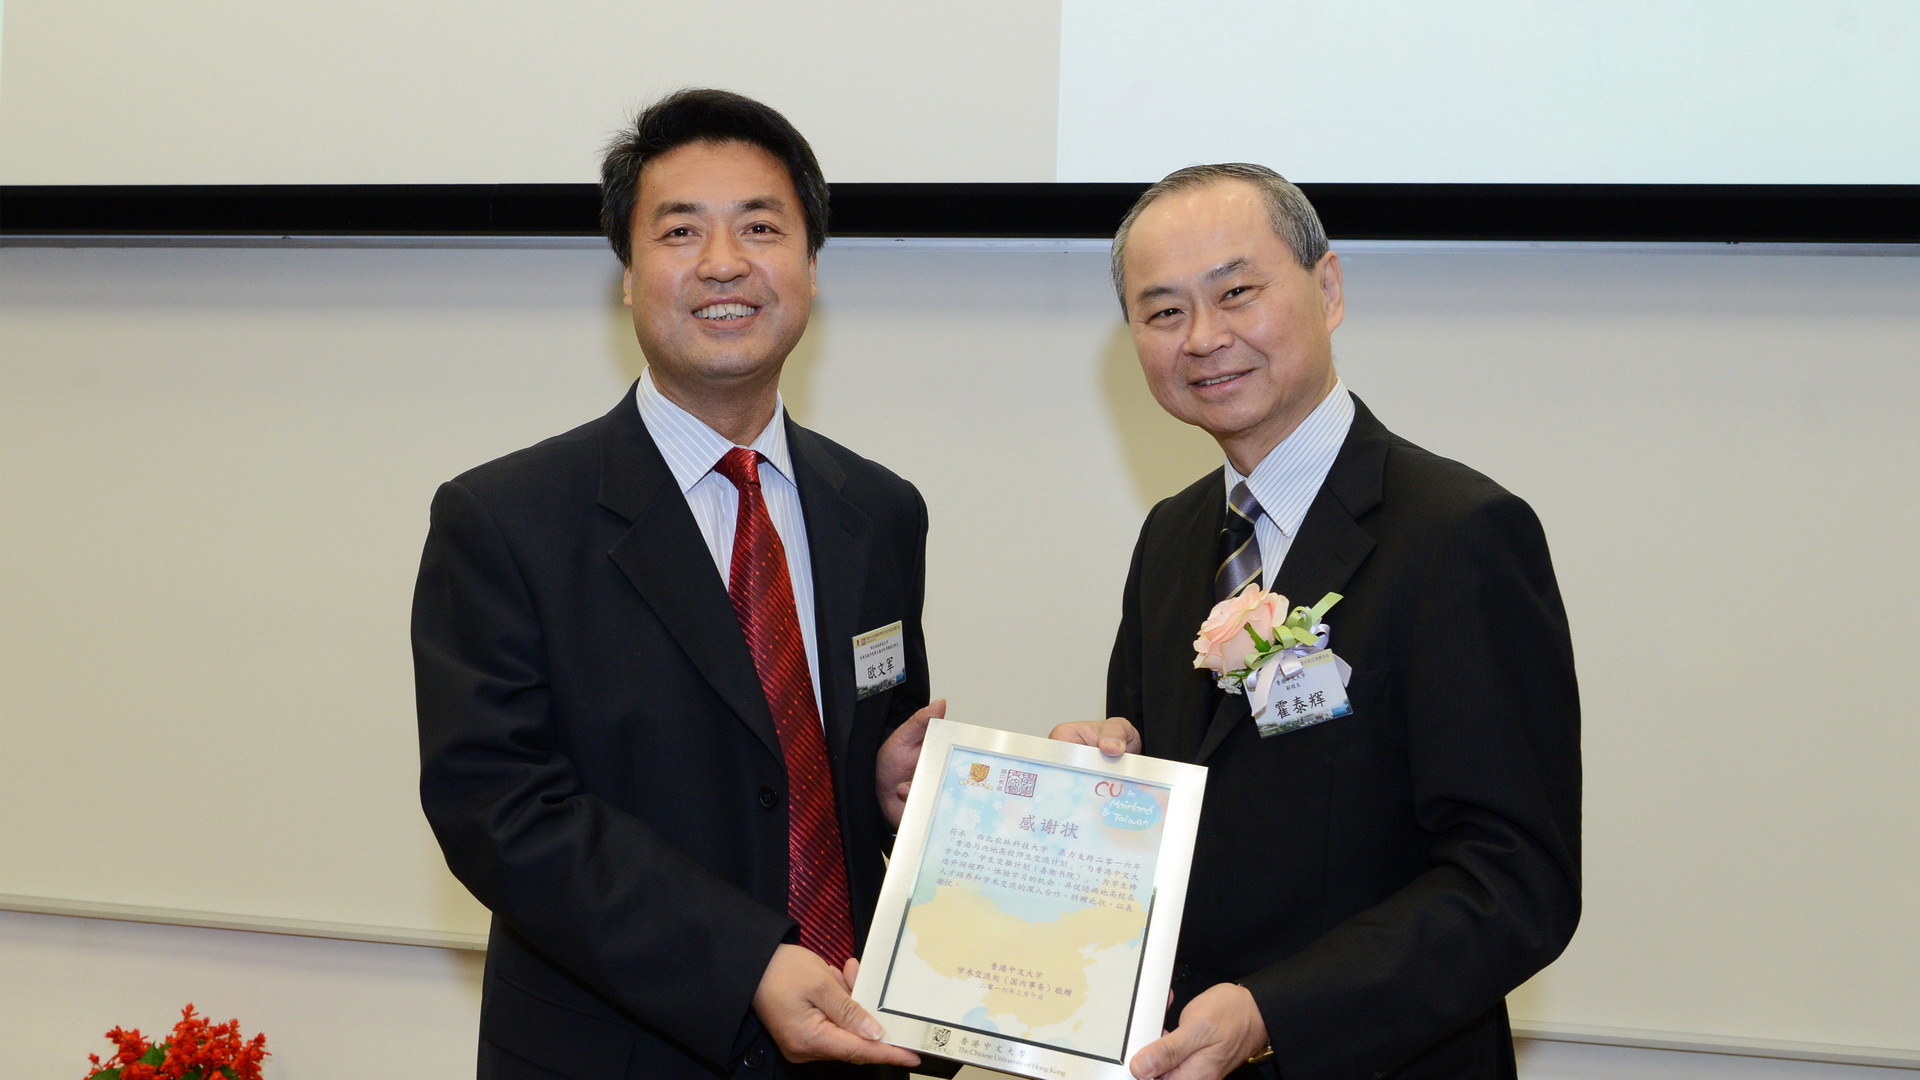 香港中文大学副校长霍泰辉教授为我校颁发感谢状